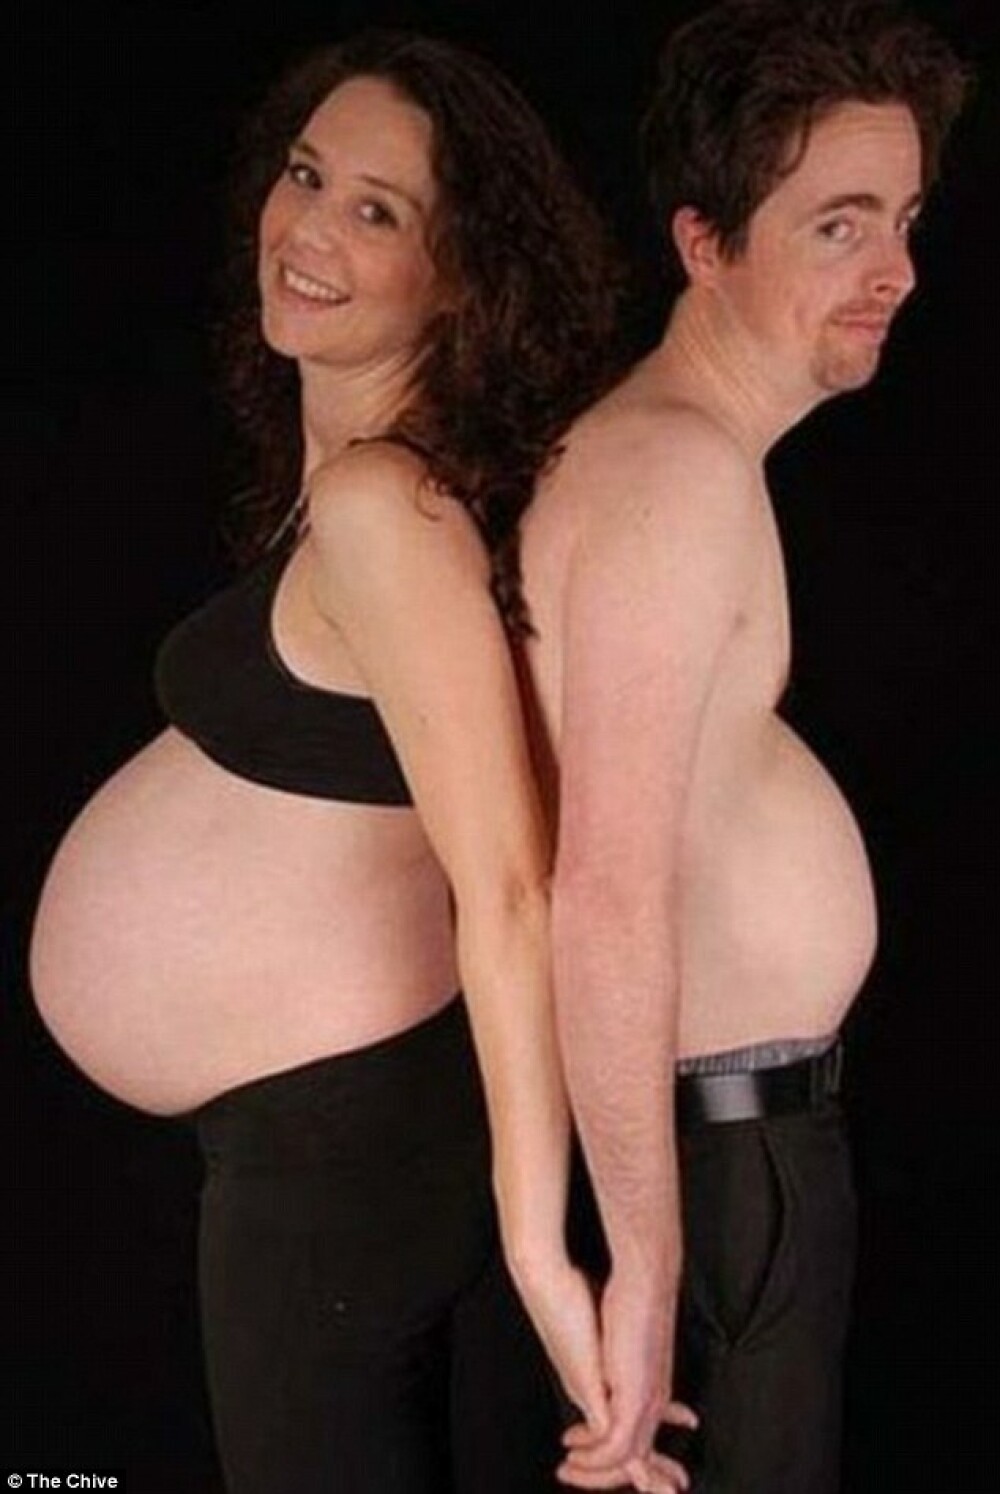 Imaginile din timpul sarcinii pe care parintii nu le pot arata niciodata copiilor. GALERIE FOTO - Imaginea 6